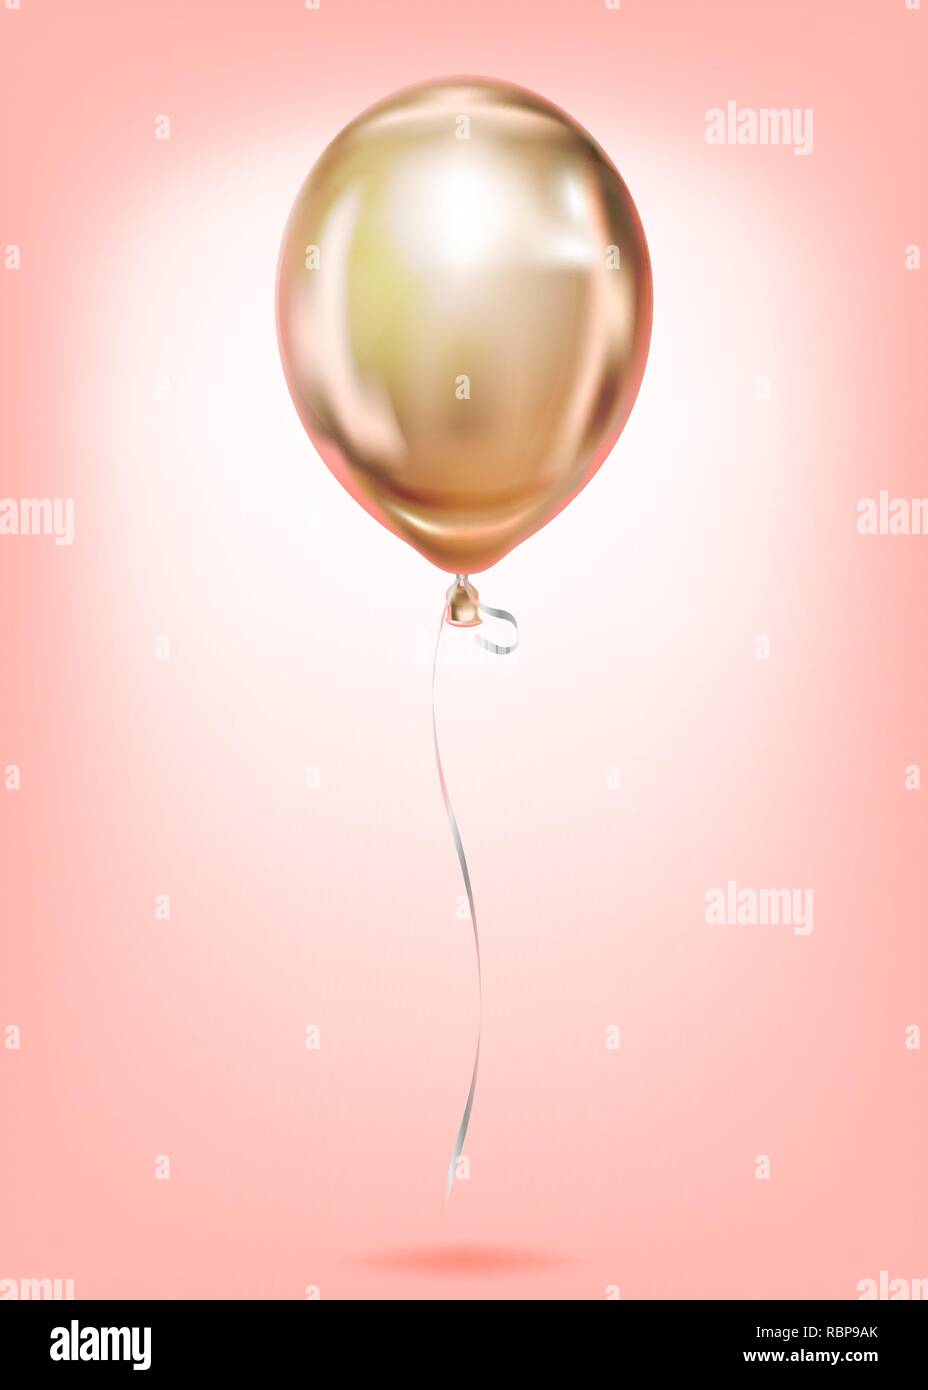 Rosa Gold Folie Einfache Ballons, goldene Kugel. Bild Geburtstagsfeier, sozialen Partei und jeder Urlaub Veranstaltungen. Isolierte Vektor glänzend Pink platinum Bal Stock Vektor